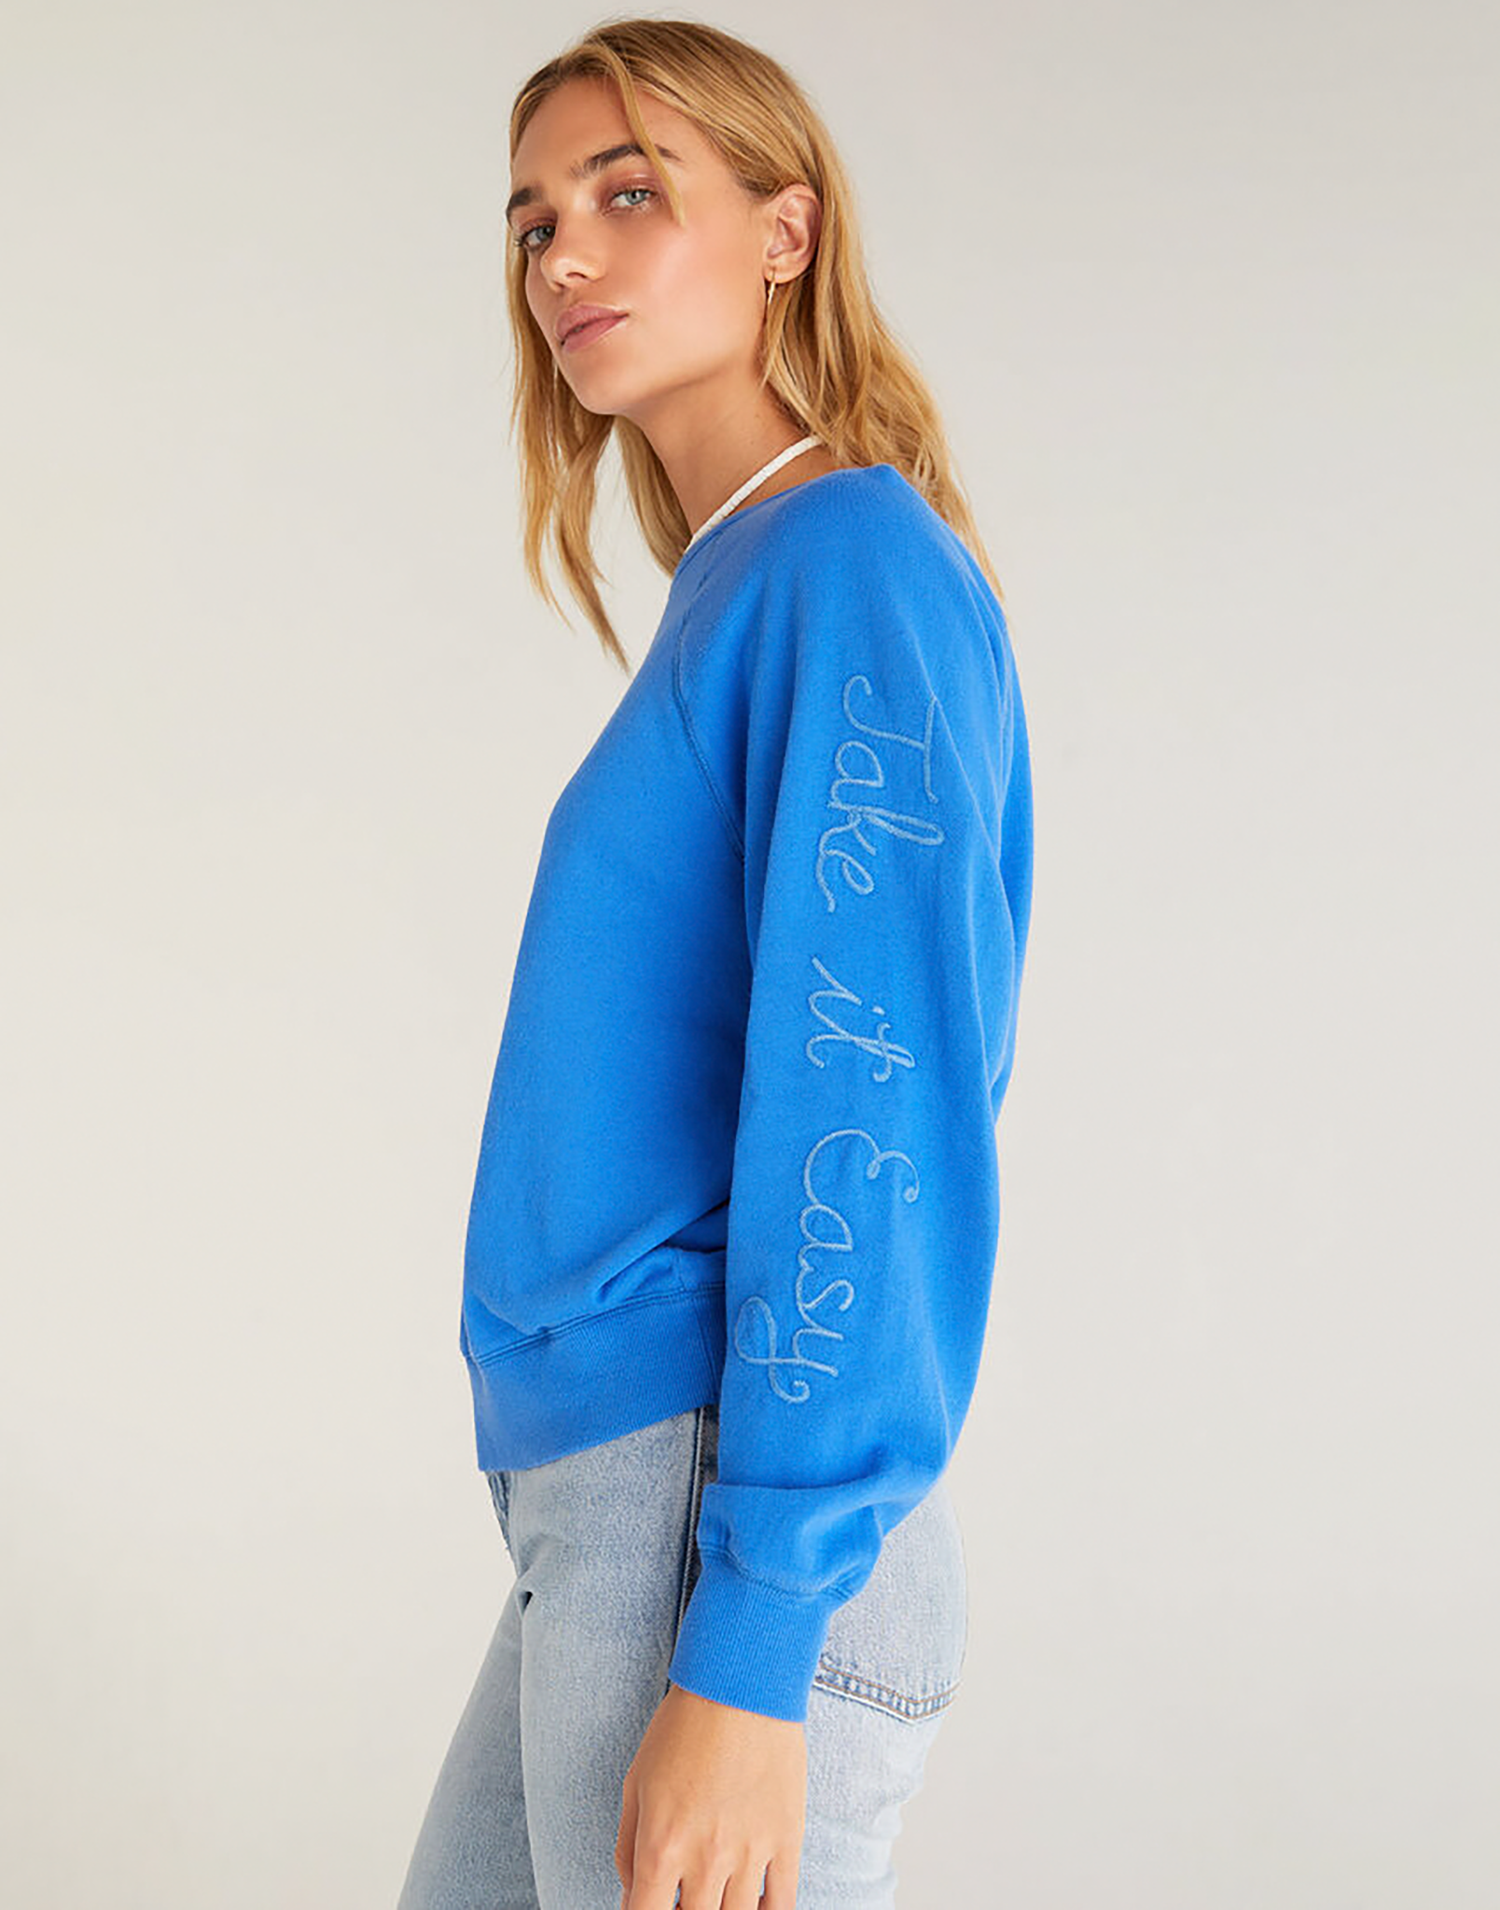 Vintage Statement Sweatshirt by Z Supply in Bright Blue - Side View